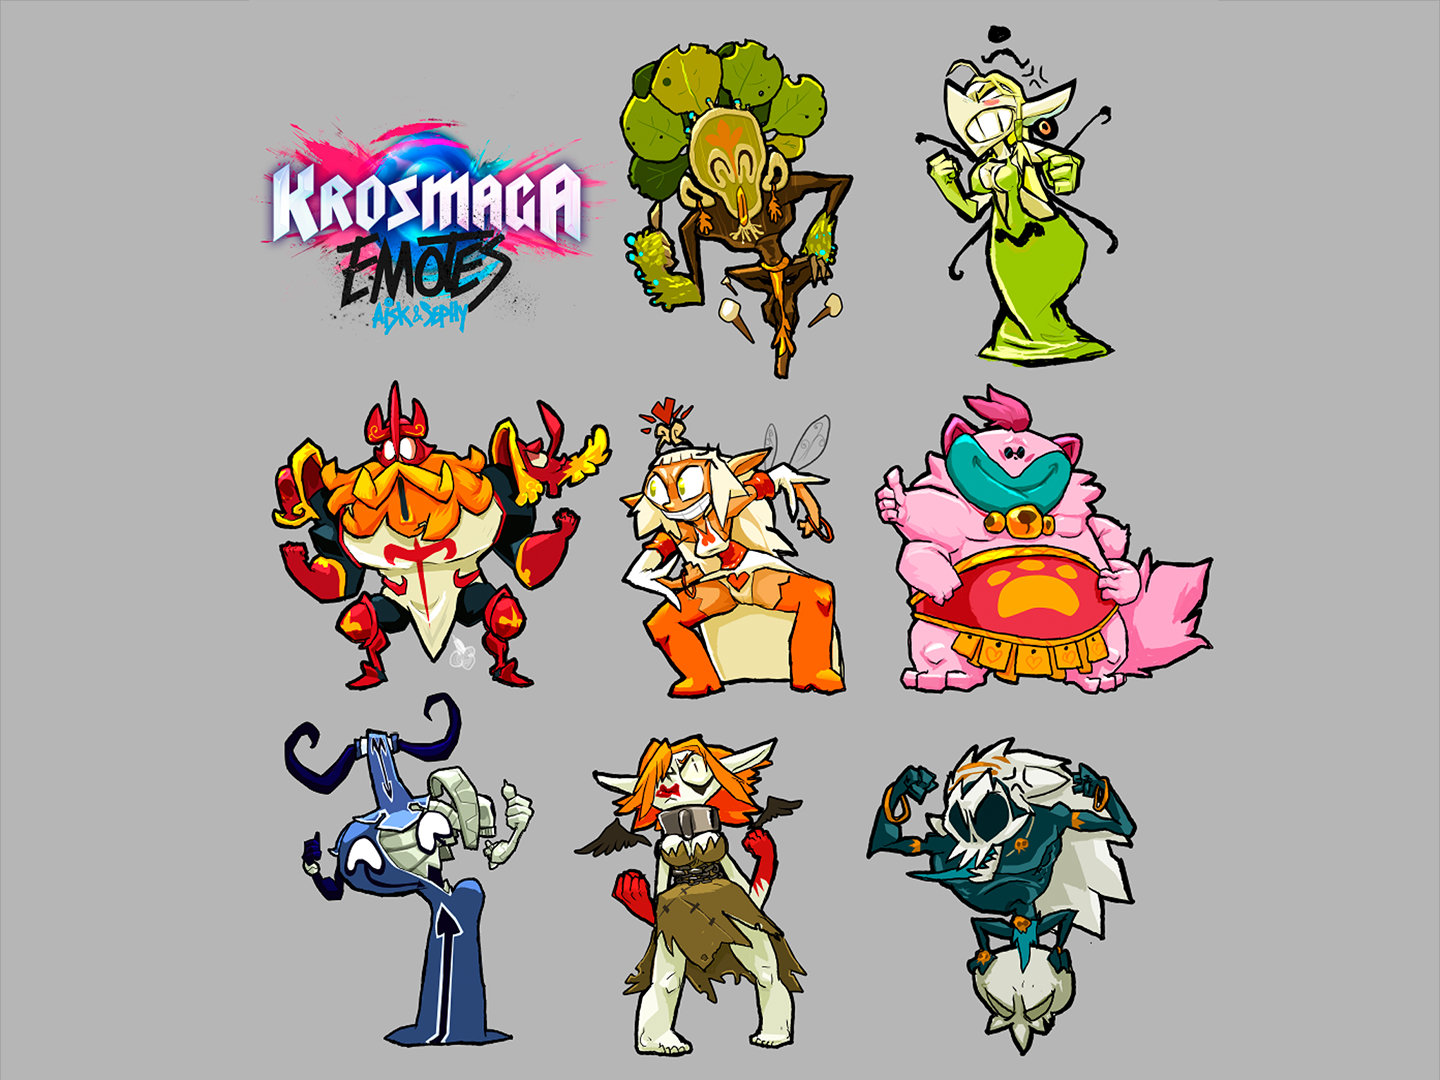 Krosmaga - Emotes designs Aisk X Sephy.